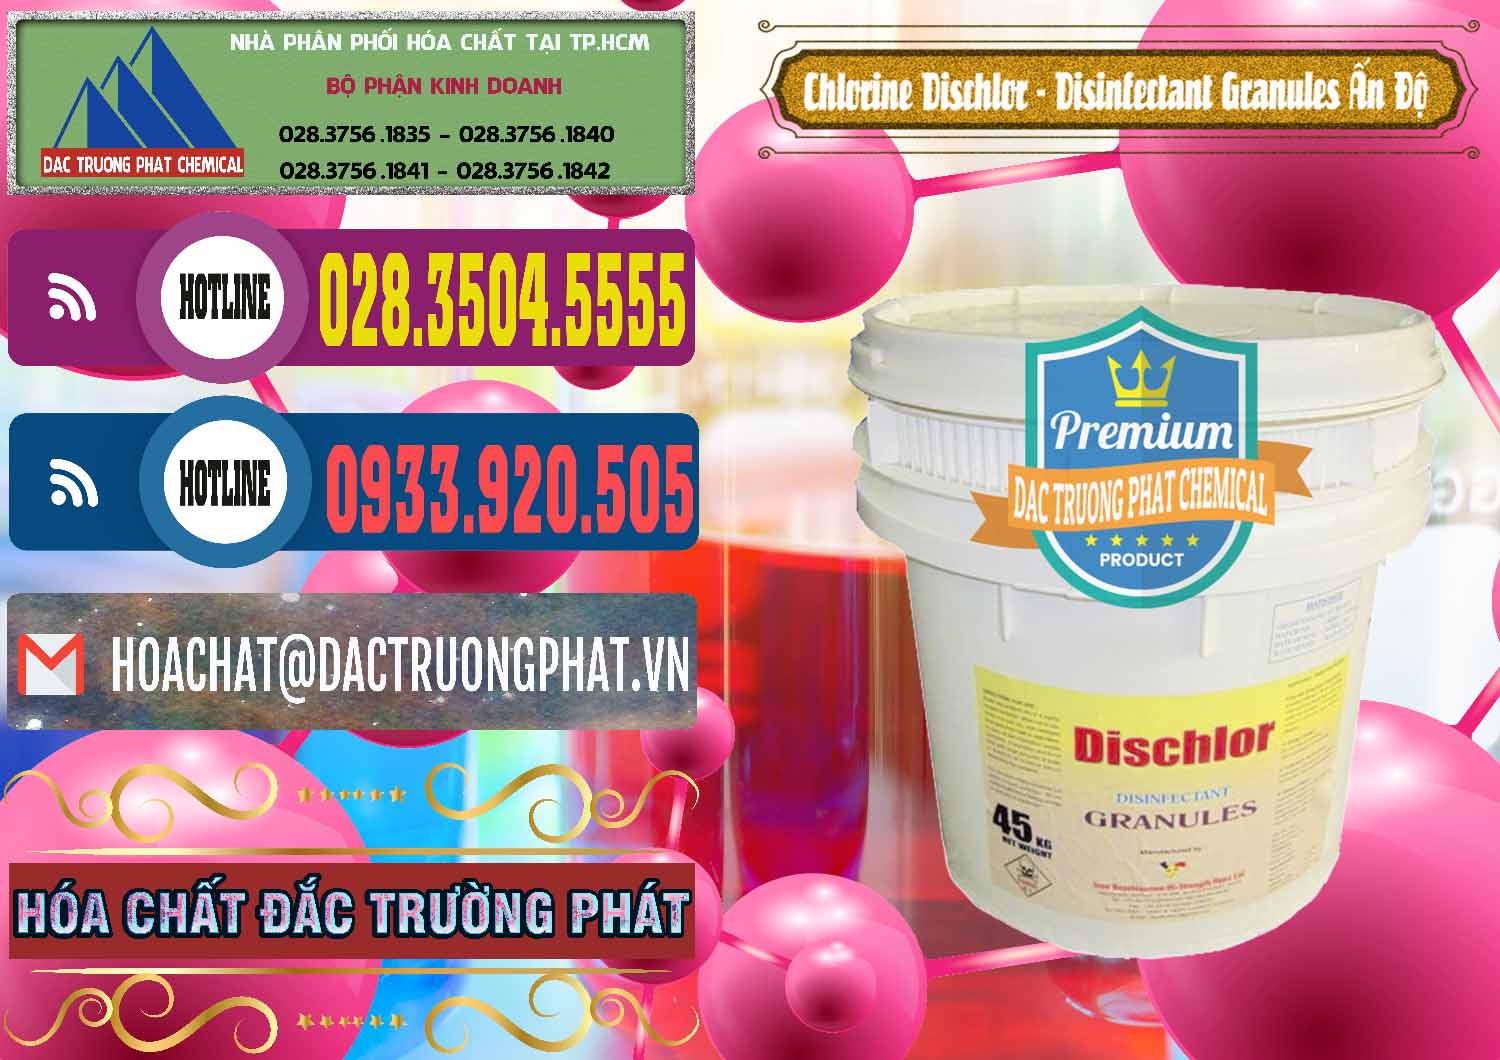 Nơi chuyên cung ứng & bán Chlorine – Clorin 70% Dischlor - Disinfectant Granules Ấn Độ India - 0248 - Nơi chuyên cung cấp & bán hóa chất tại TP.HCM - muabanhoachat.com.vn